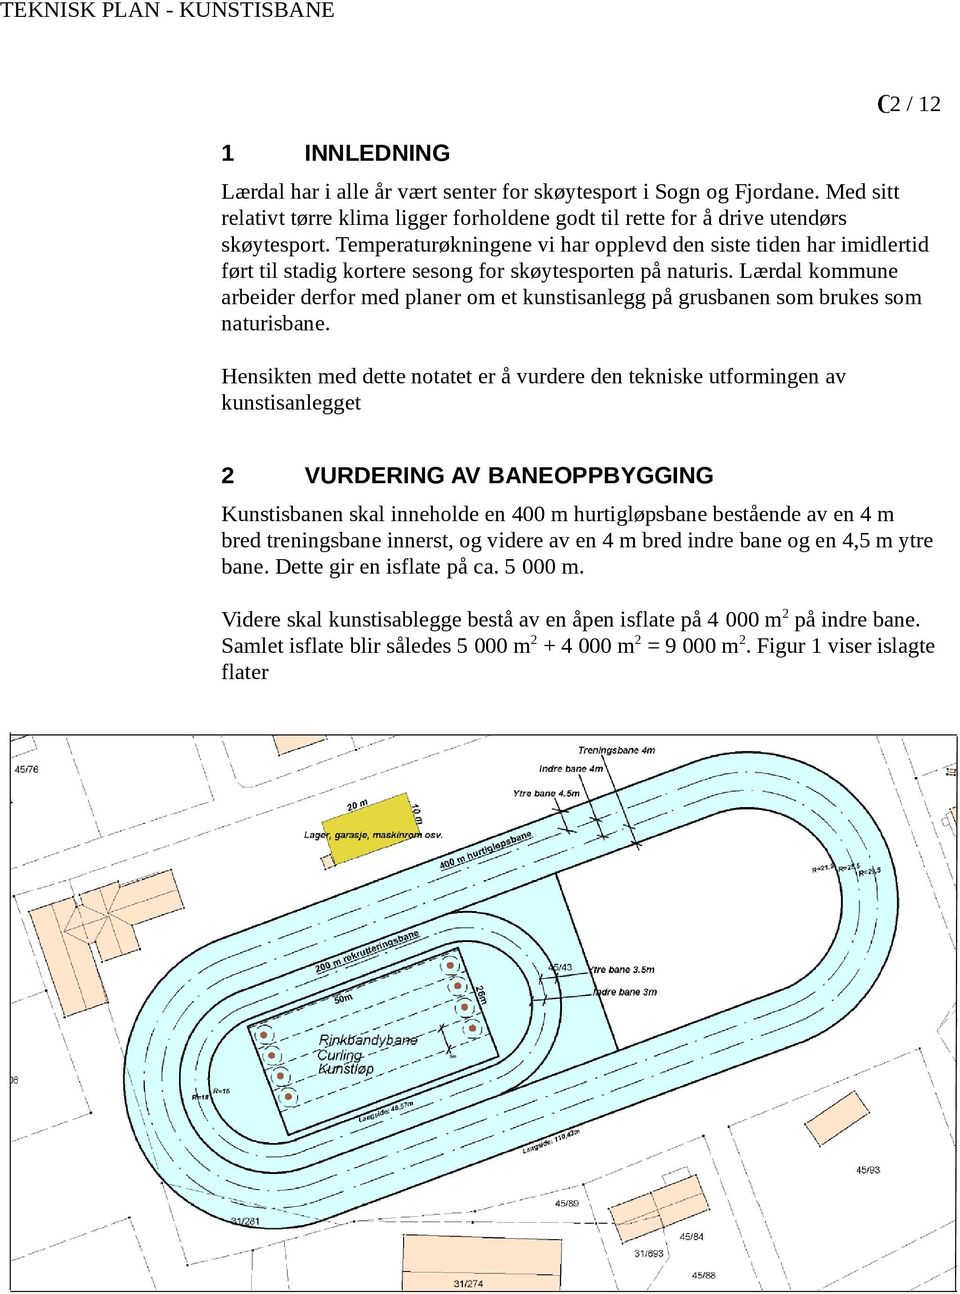 Lærdal kommune arbeider derfor med planer om et kunstisanlegg på grusbanen som brukes som naturisbane. Hensikten med dette notatet er å vurdere den tekniske utformingen av kunstisanlegget.